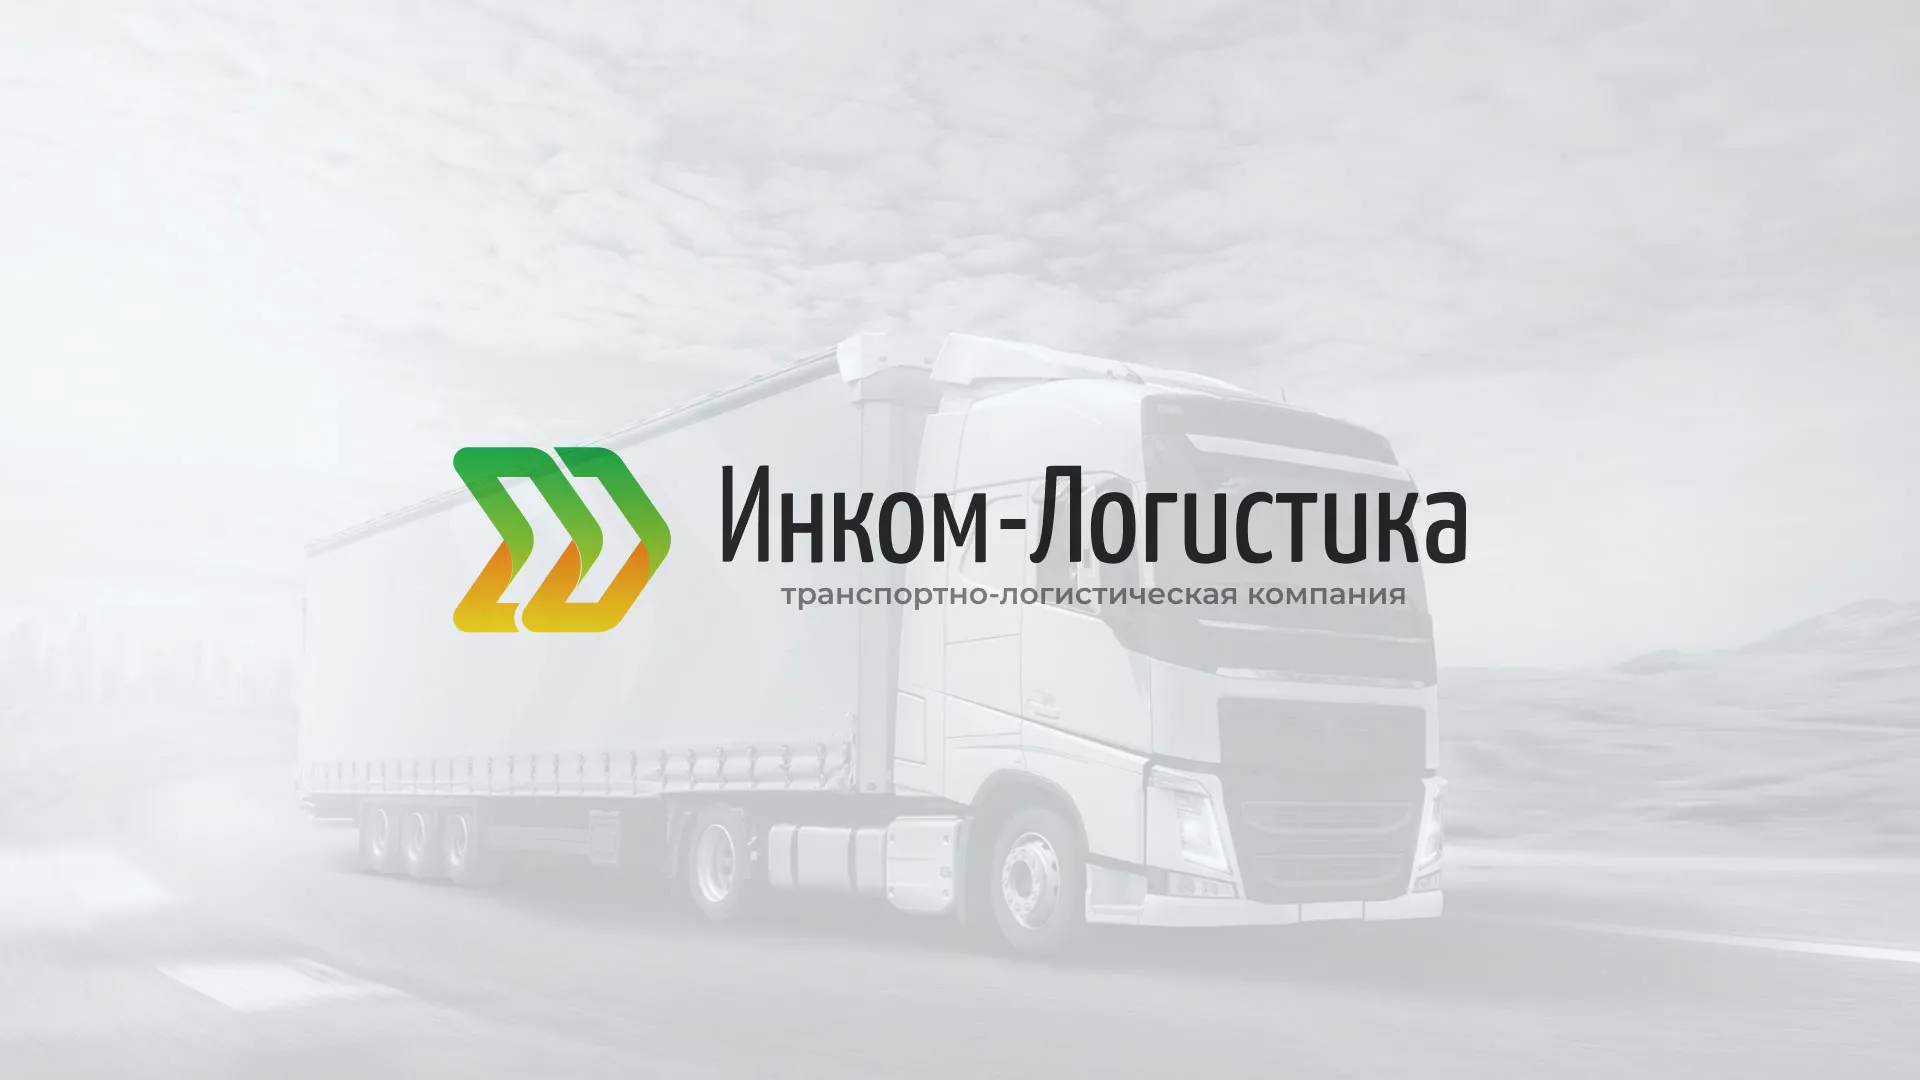 Разработка логотипа и сайта компании «Инком-Логистика» в Болхове